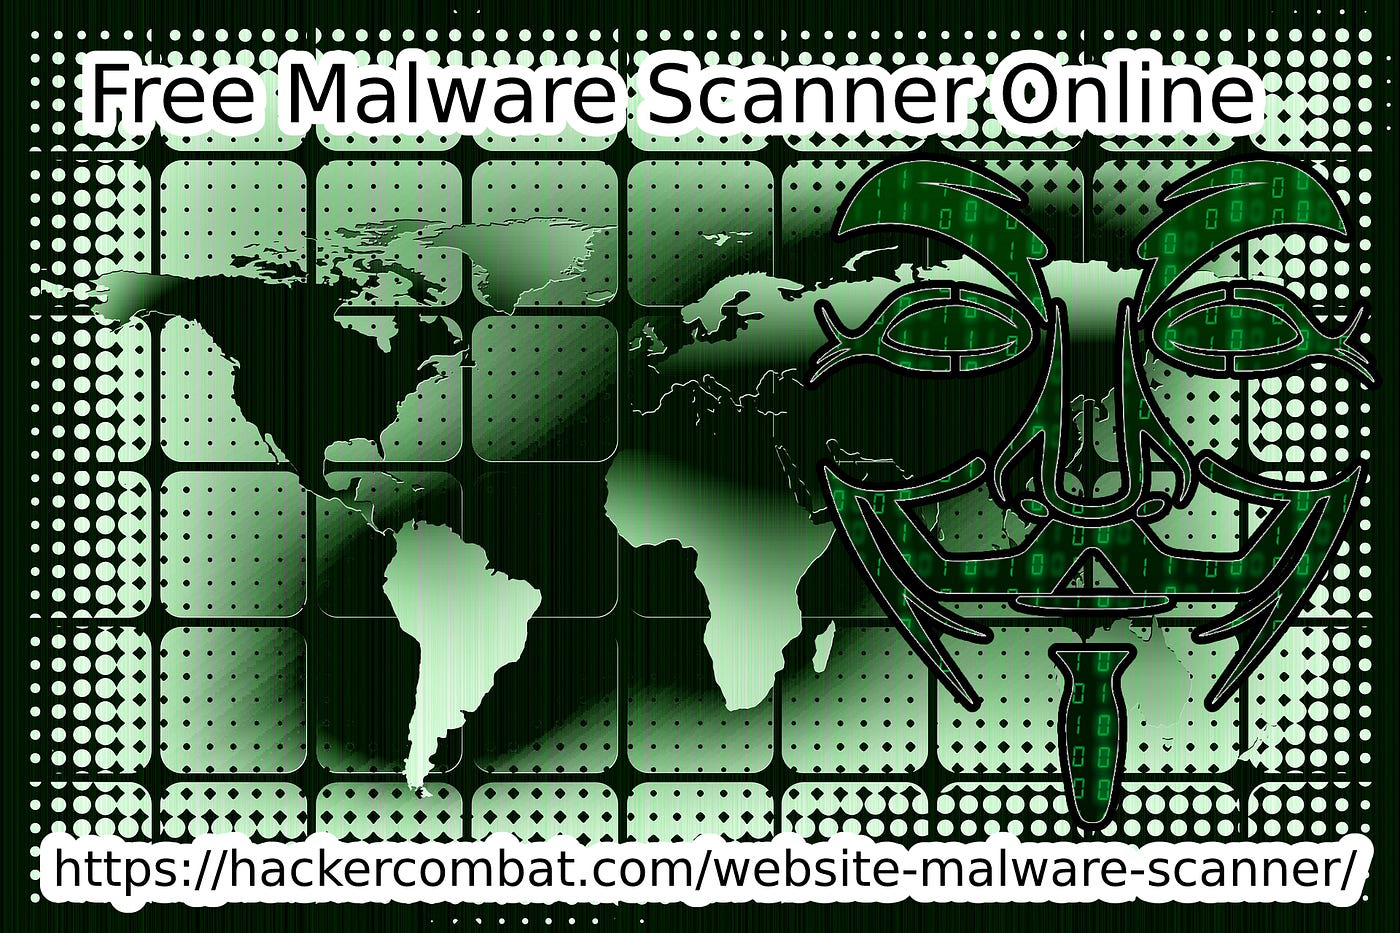 Free Website Malware Scanner Online | by marksmencken | Medium